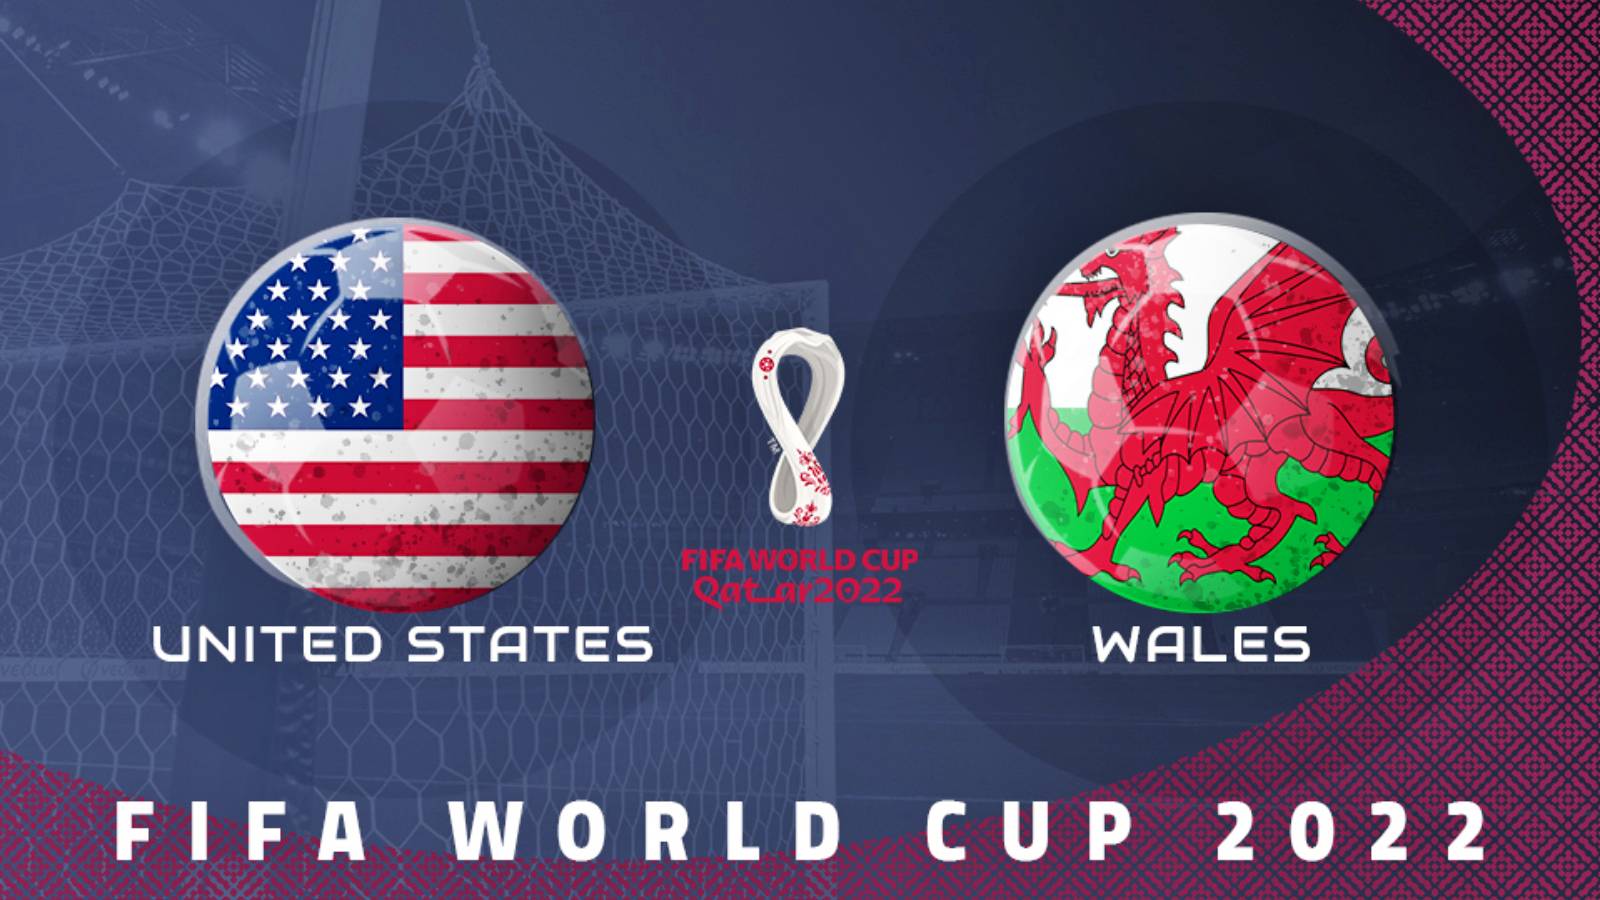 USA – WALES LIVE TVR 1 FUSSBALL-WELTMEISTERSCHAFT 2022